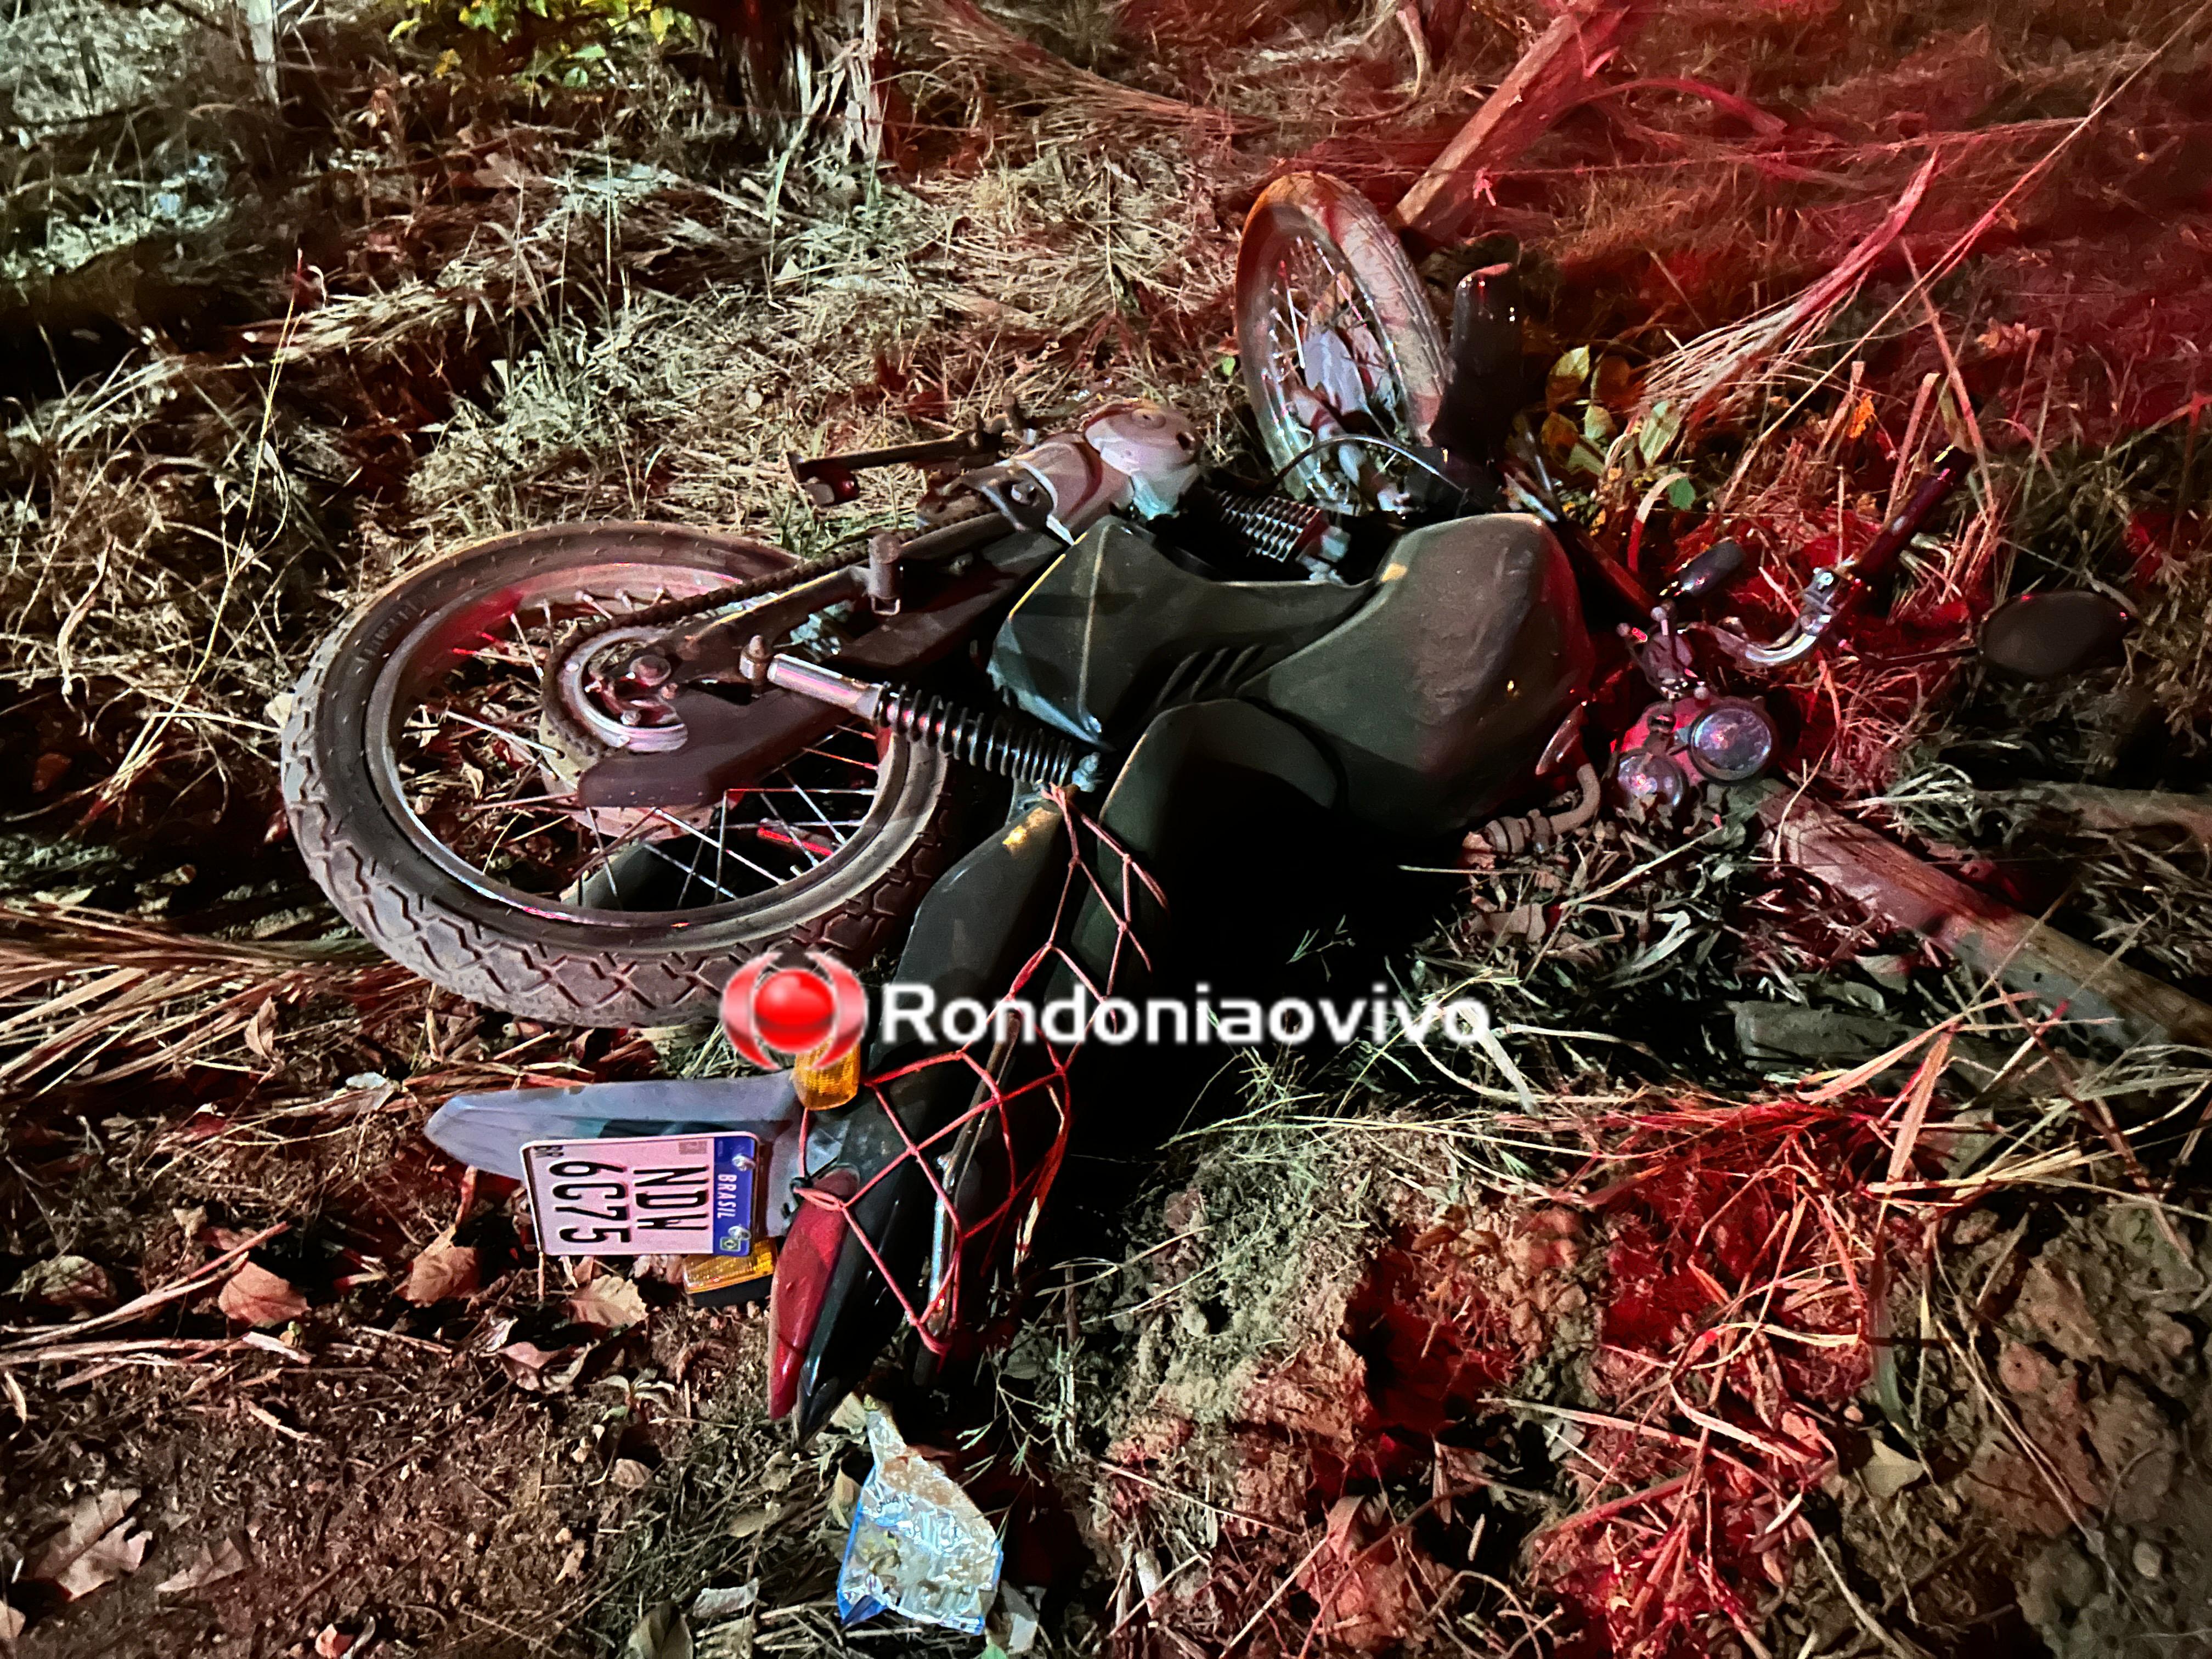 URGENTE: Motociclista colide violentamente em cerca após batida em carro